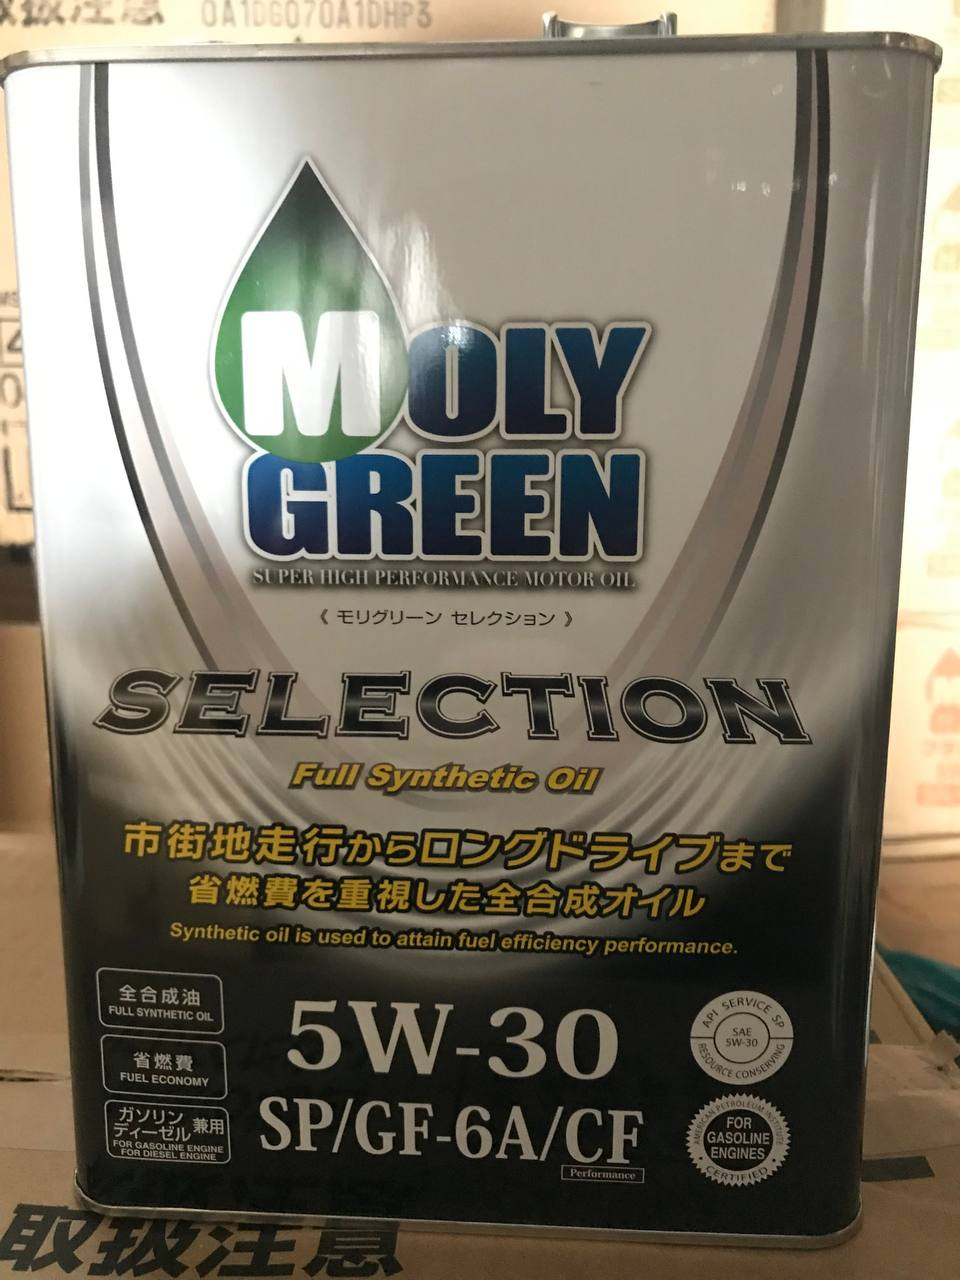 Toyota Motor Oil 0w-20 API SP ILSAC gf-6. Moly Green super High Performance Motor Oil 5w- 30 SP/gf-6a/CF. Моли Грин антифриз. Отзыв масло moly green